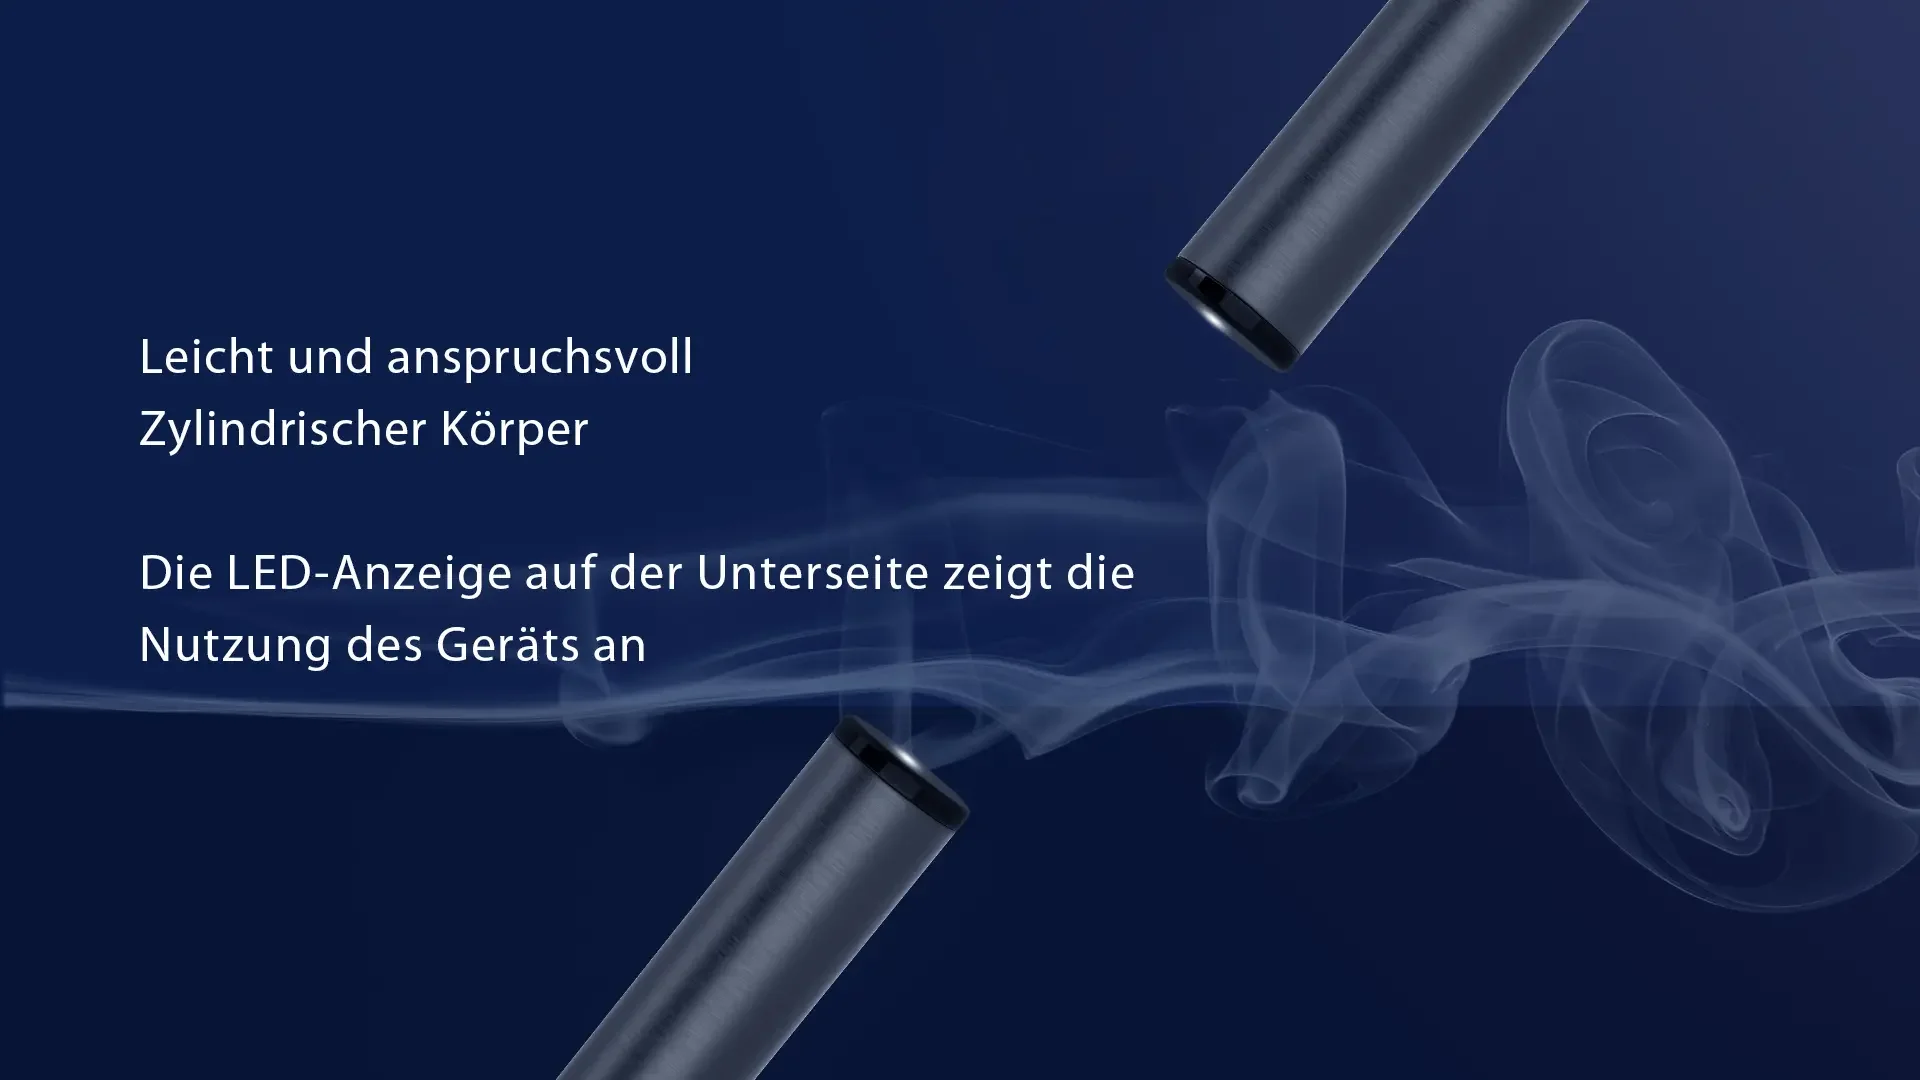 B2 Plus 1500 Puffs E-Zigarette